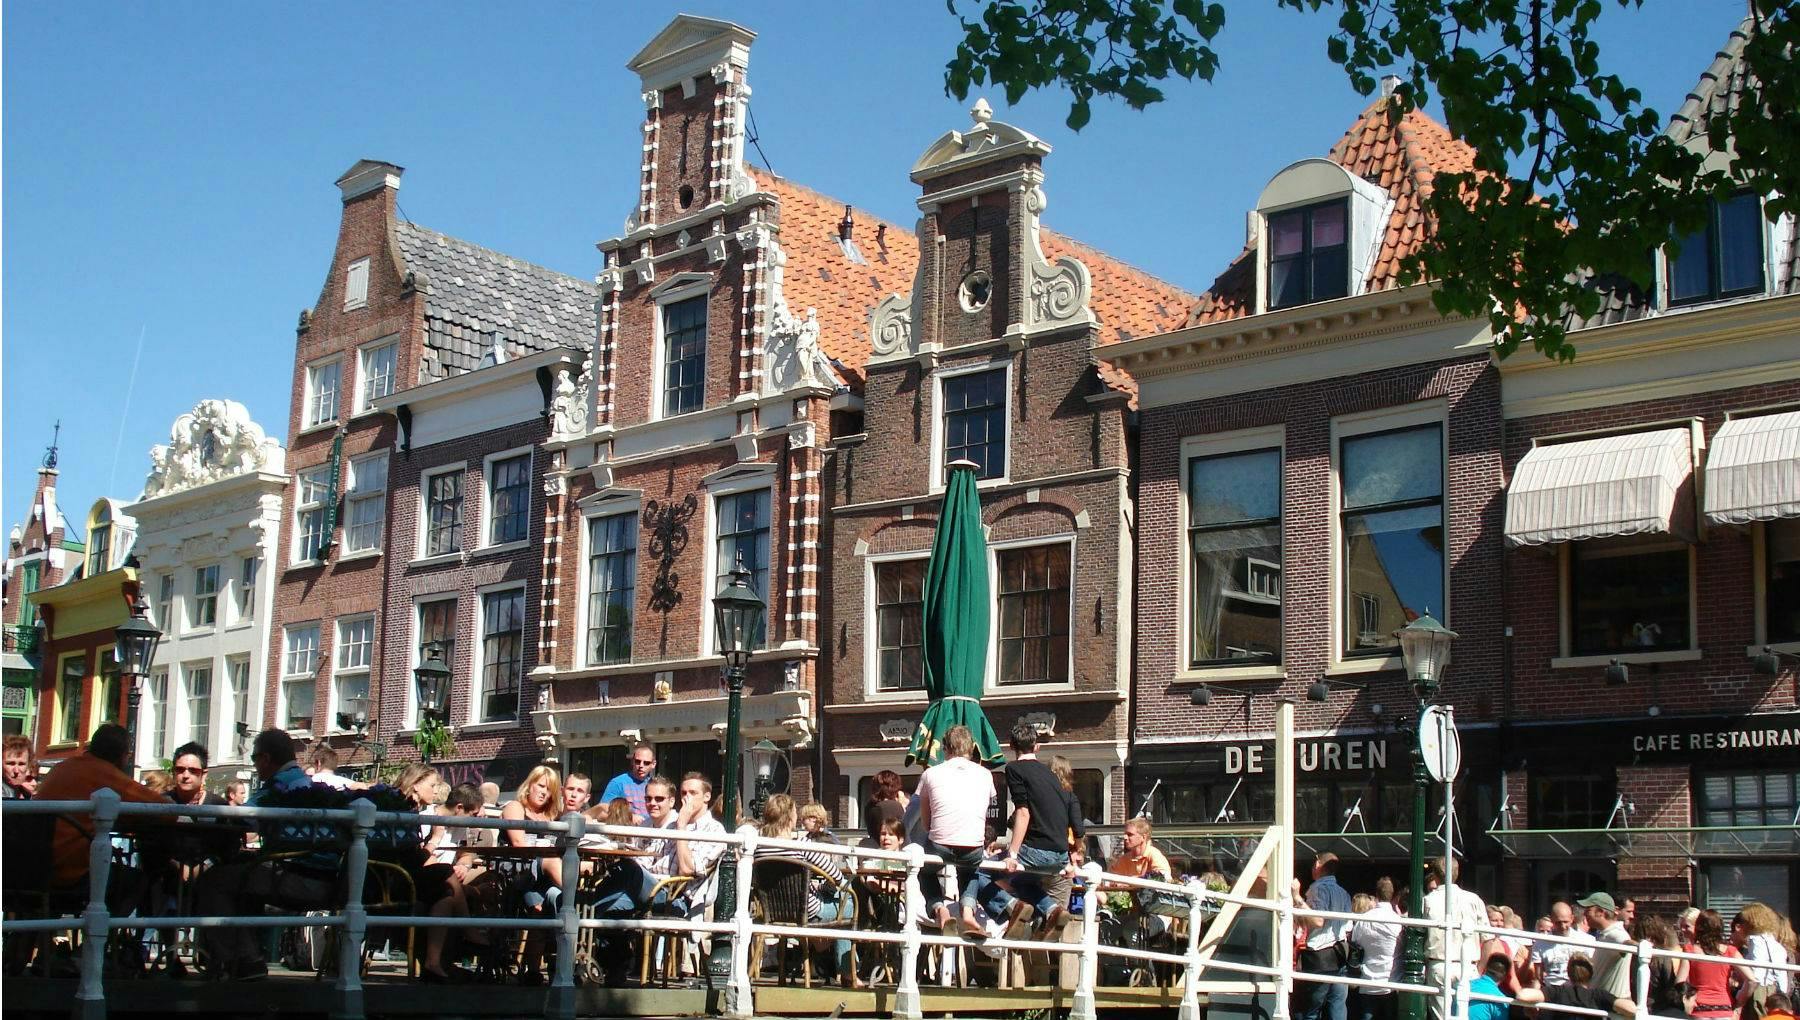 Living in Alkmaar, Bergen and Hoorn